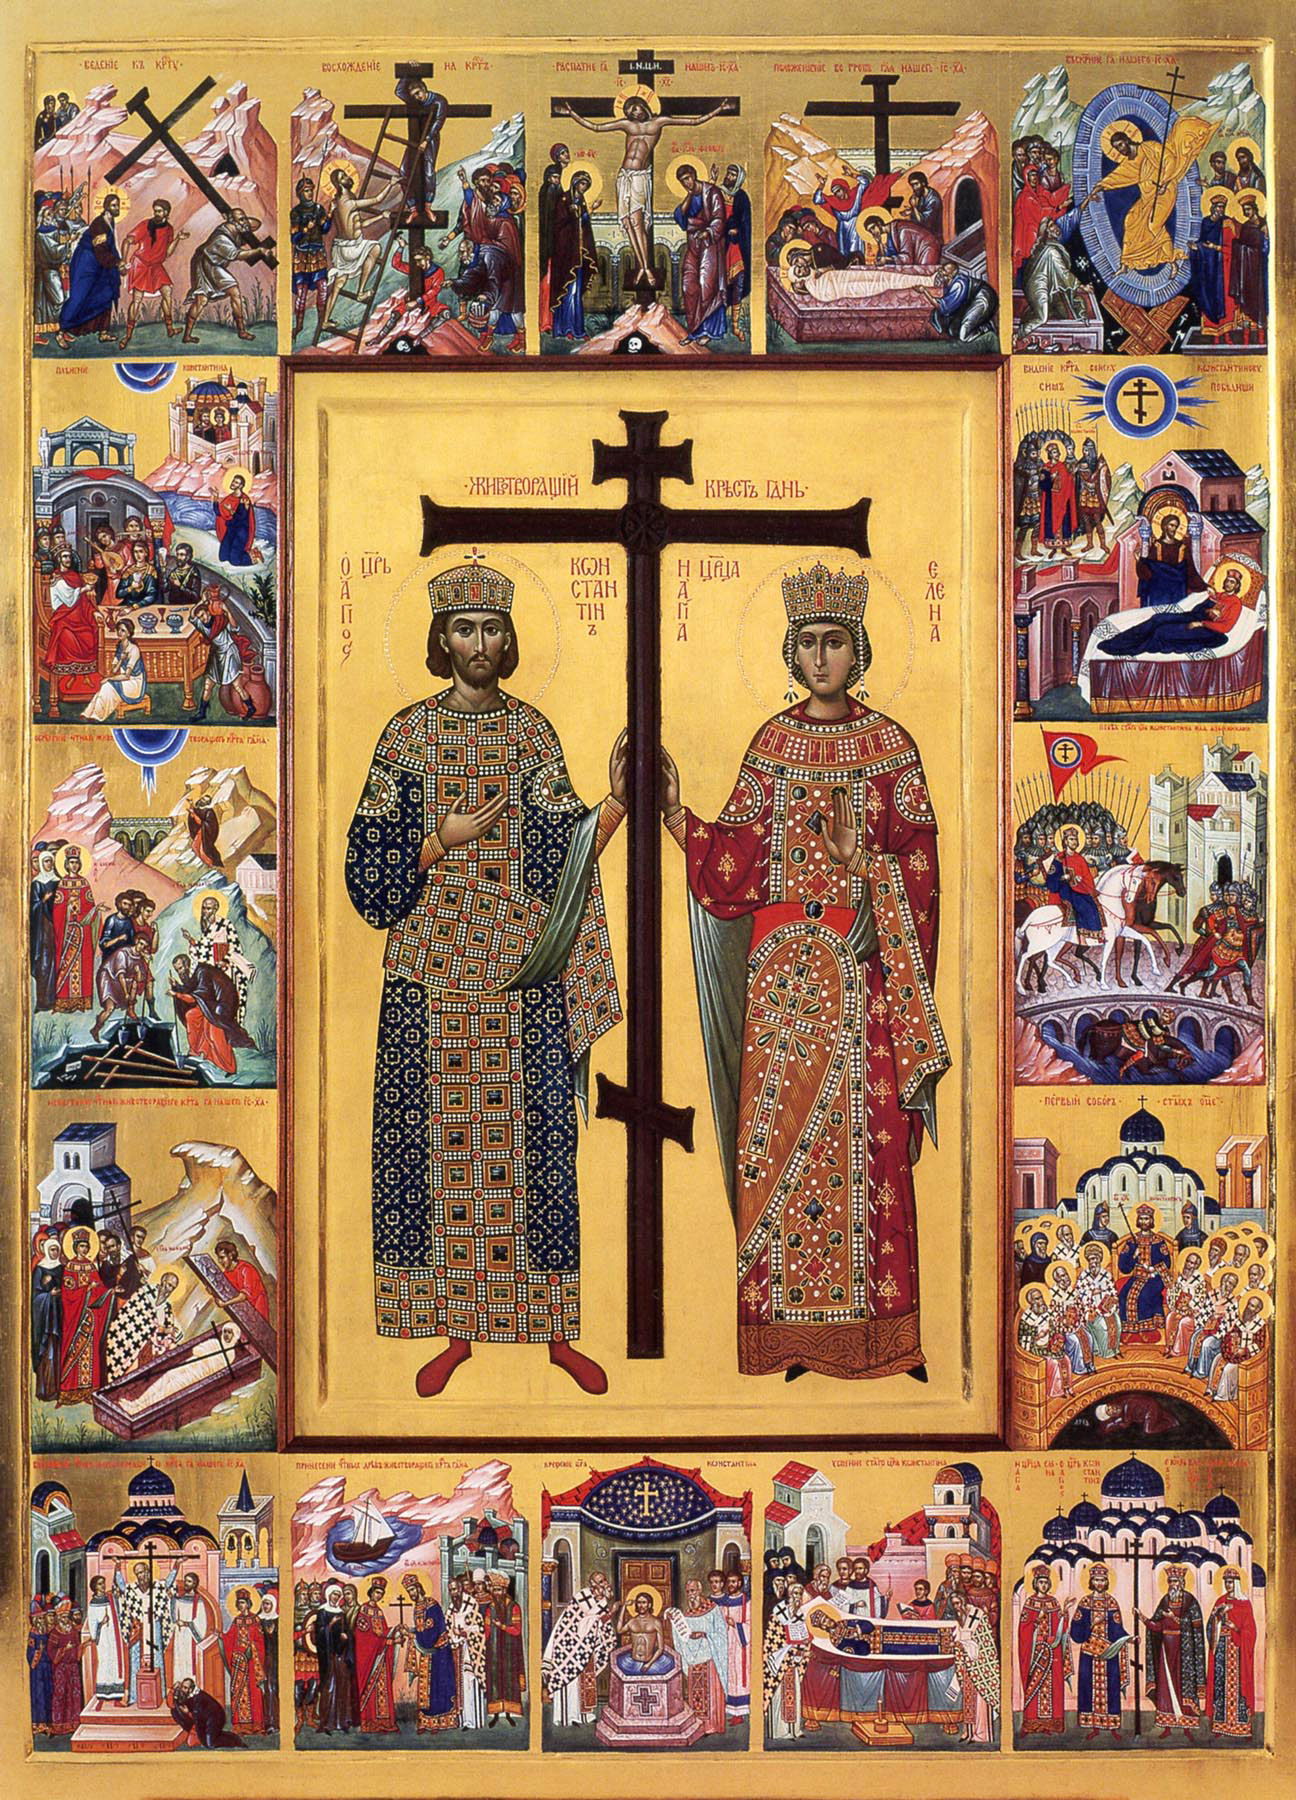 Царь Константин и святая мать его Елена.